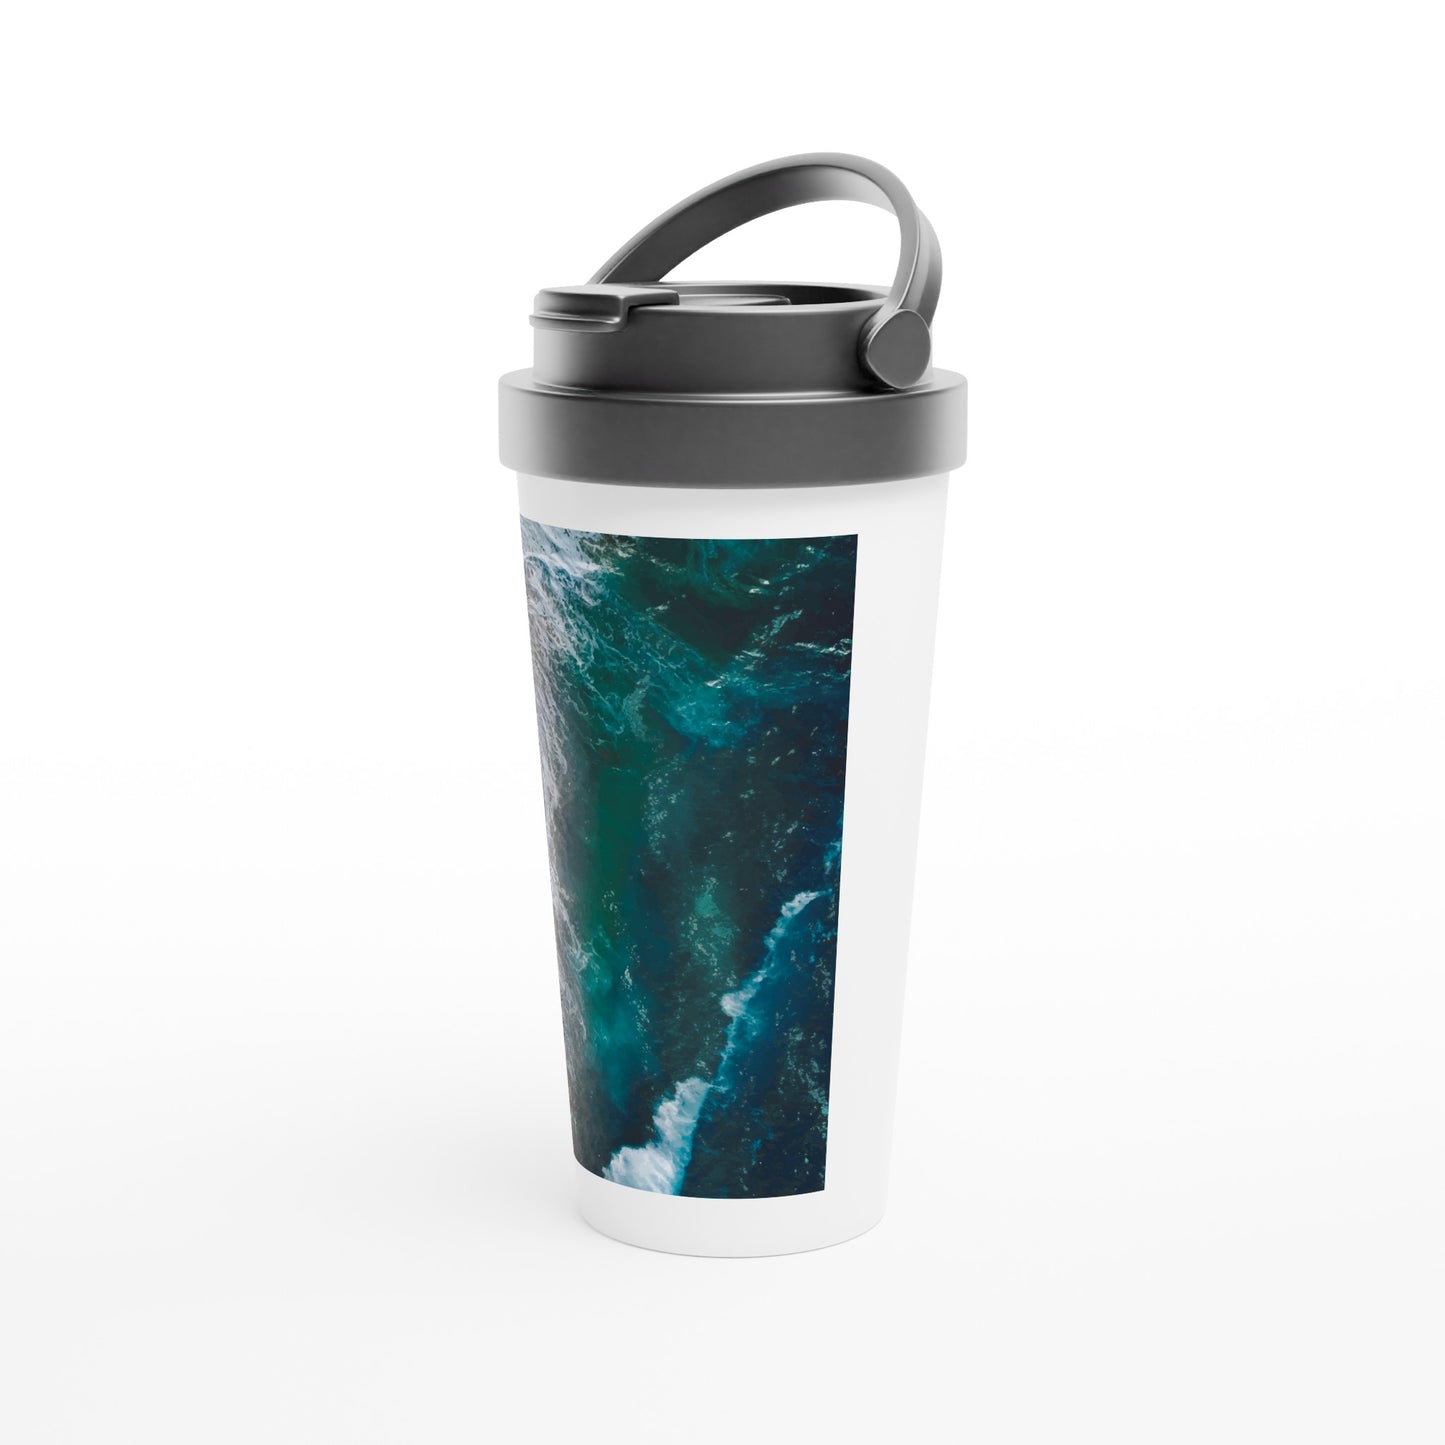 'Ocean View' stainless steel travel mug